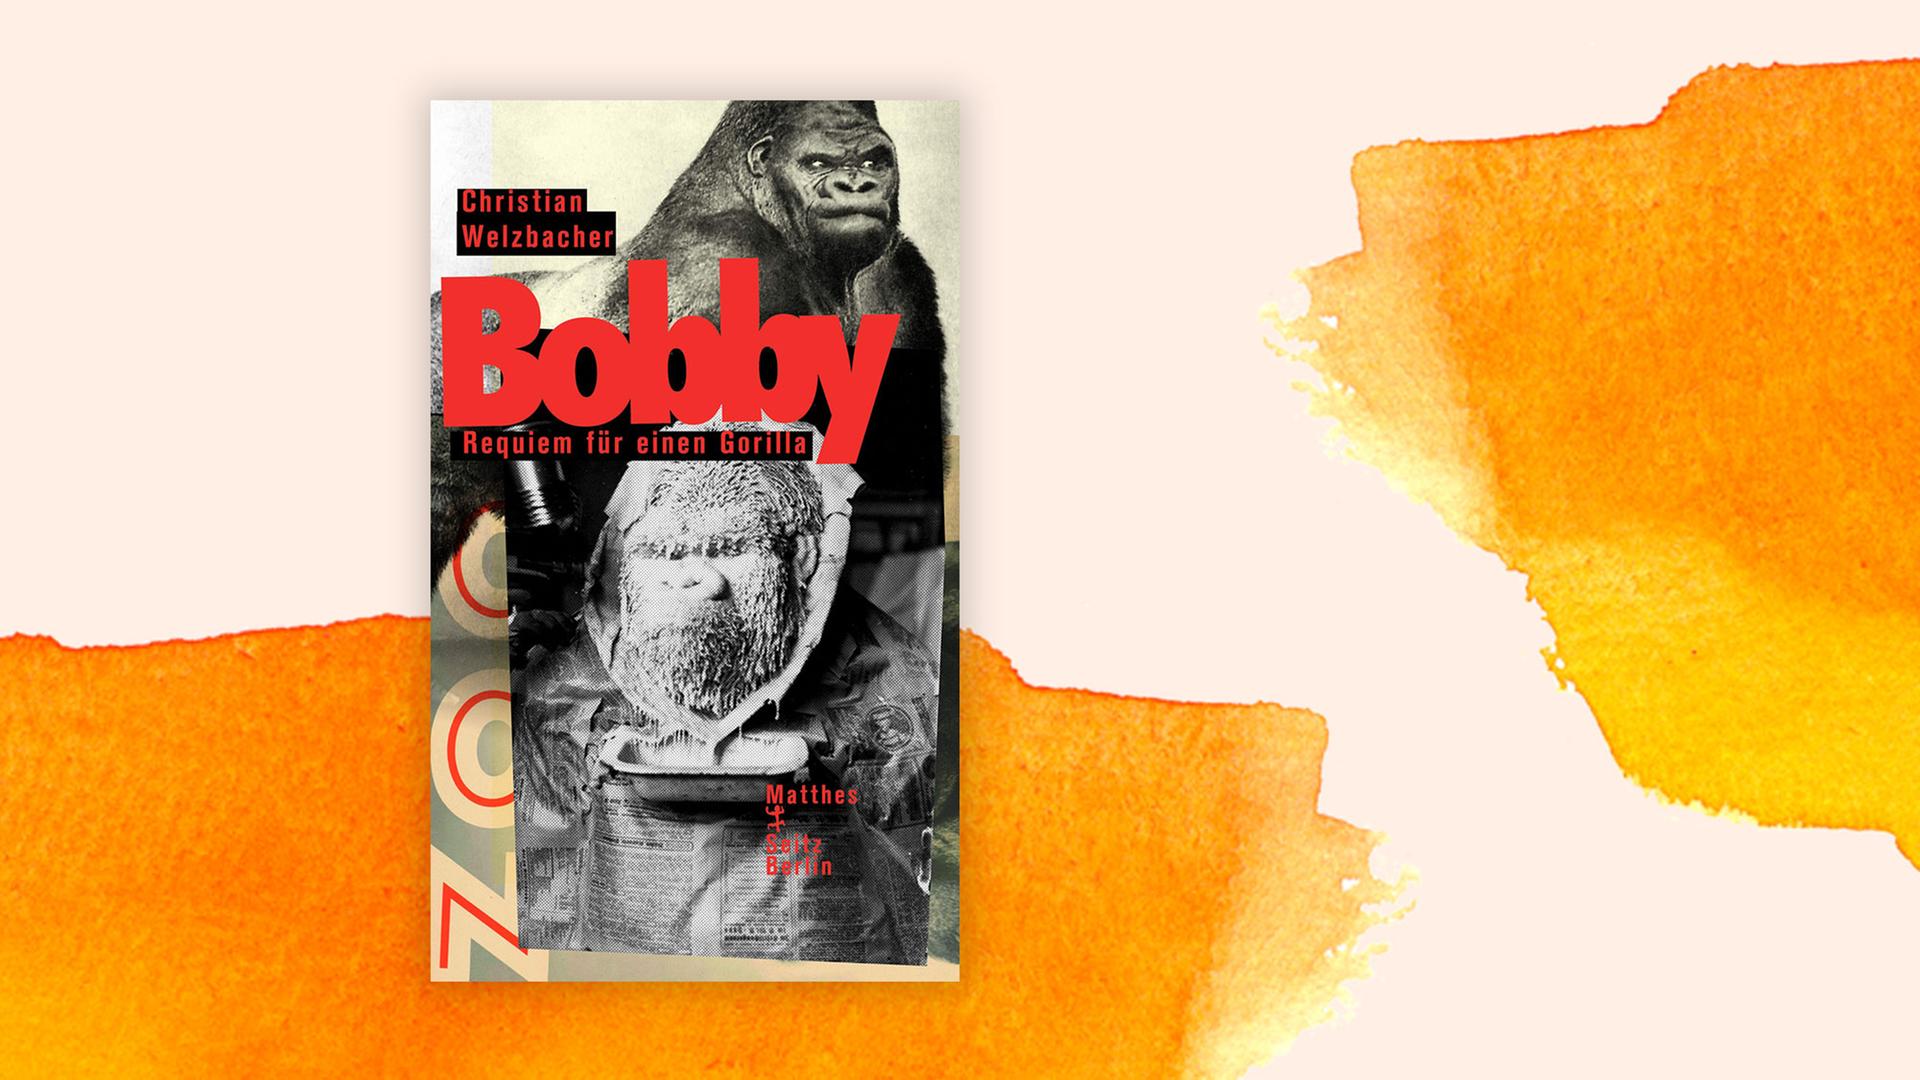 "Bobby. Requiem für einen Gorilla" von Christian Welzbacher